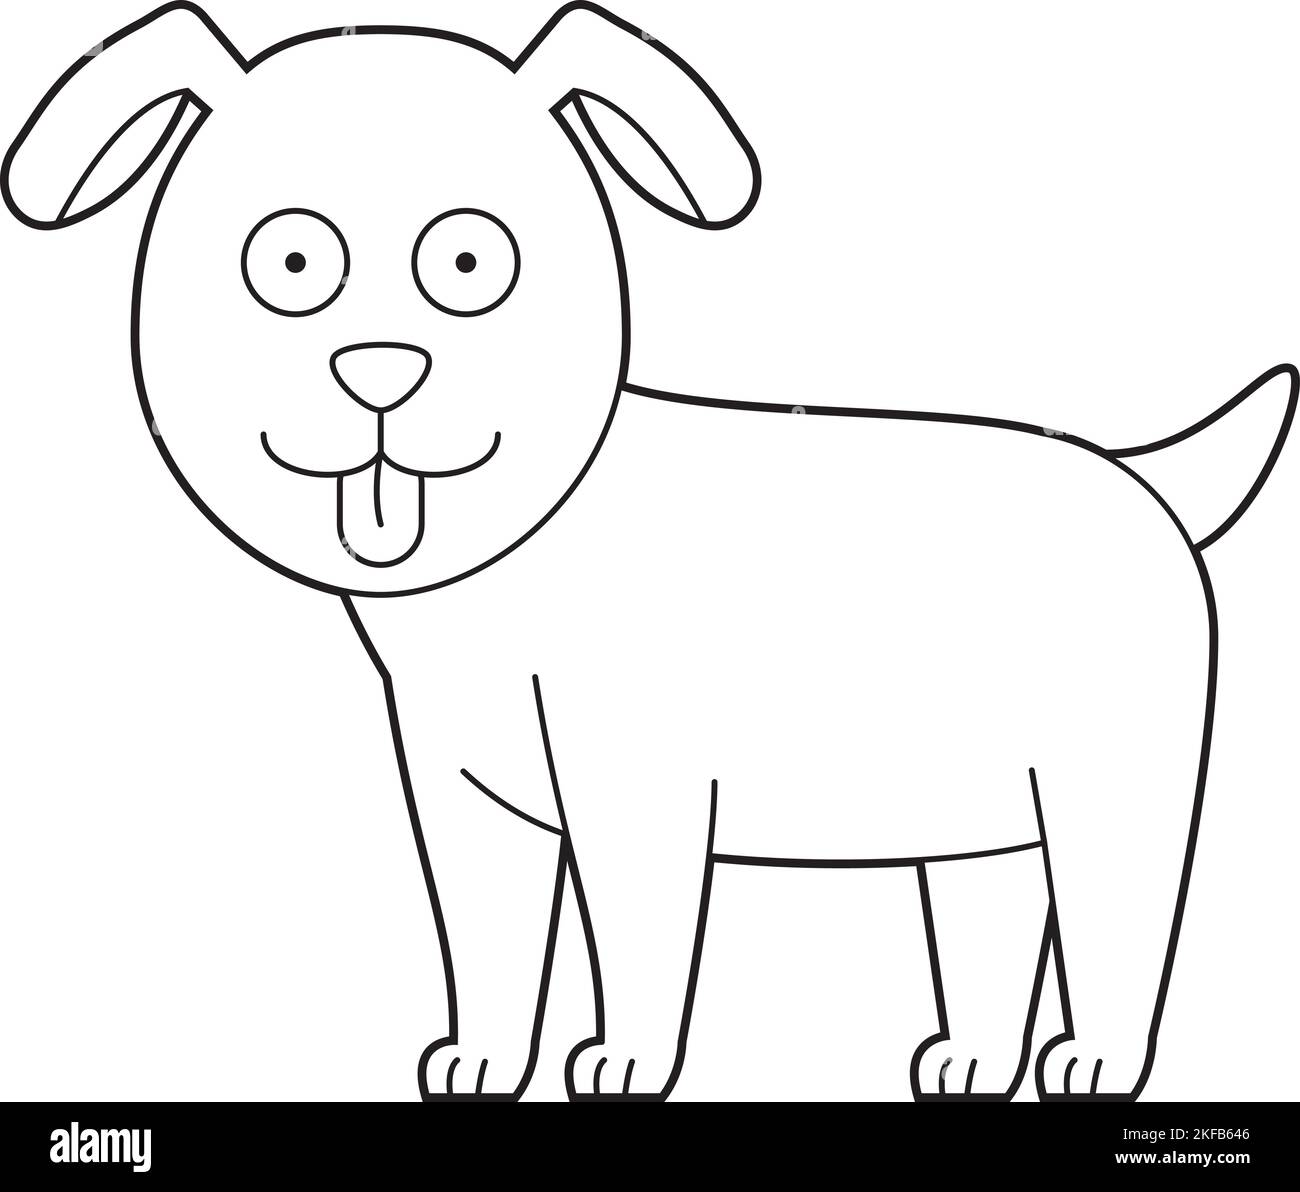 Facile colorazione cartoon vettoriale illustrazione di un cane Illustrazione Vettoriale